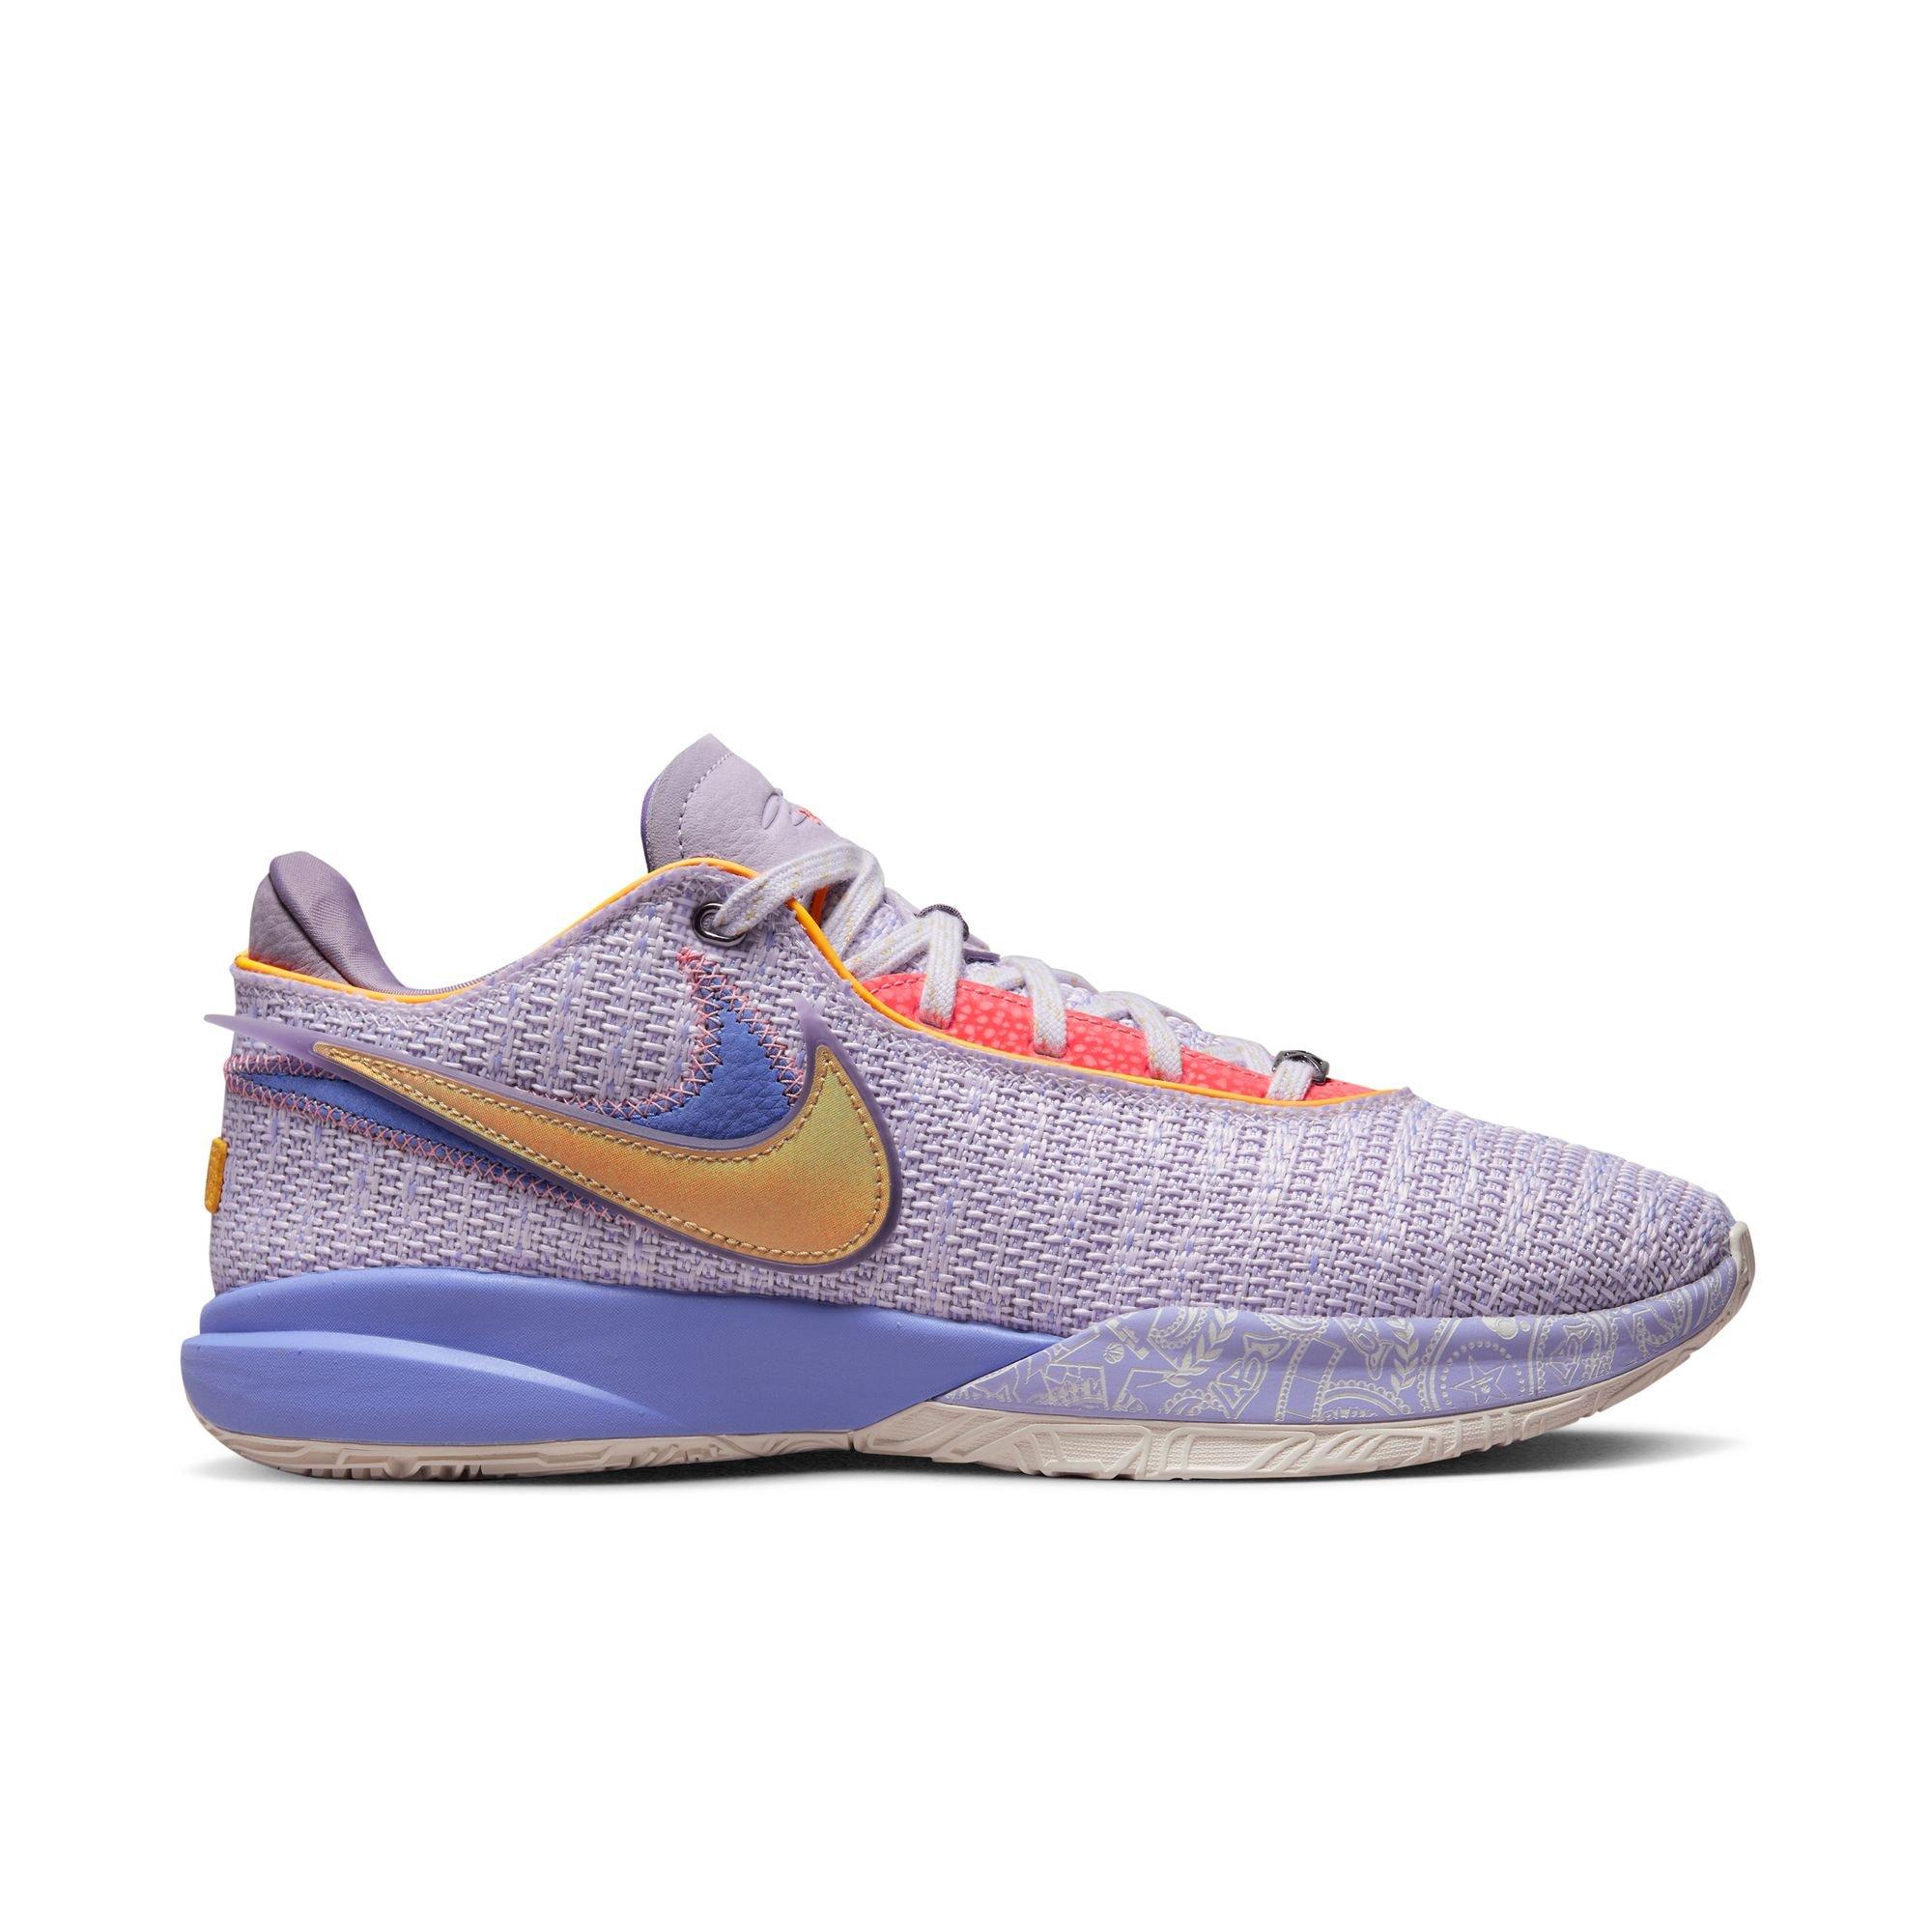 Nike LeBron 19 NRG Basketball Shoes in Orange/Mantra Orange Size 7.5